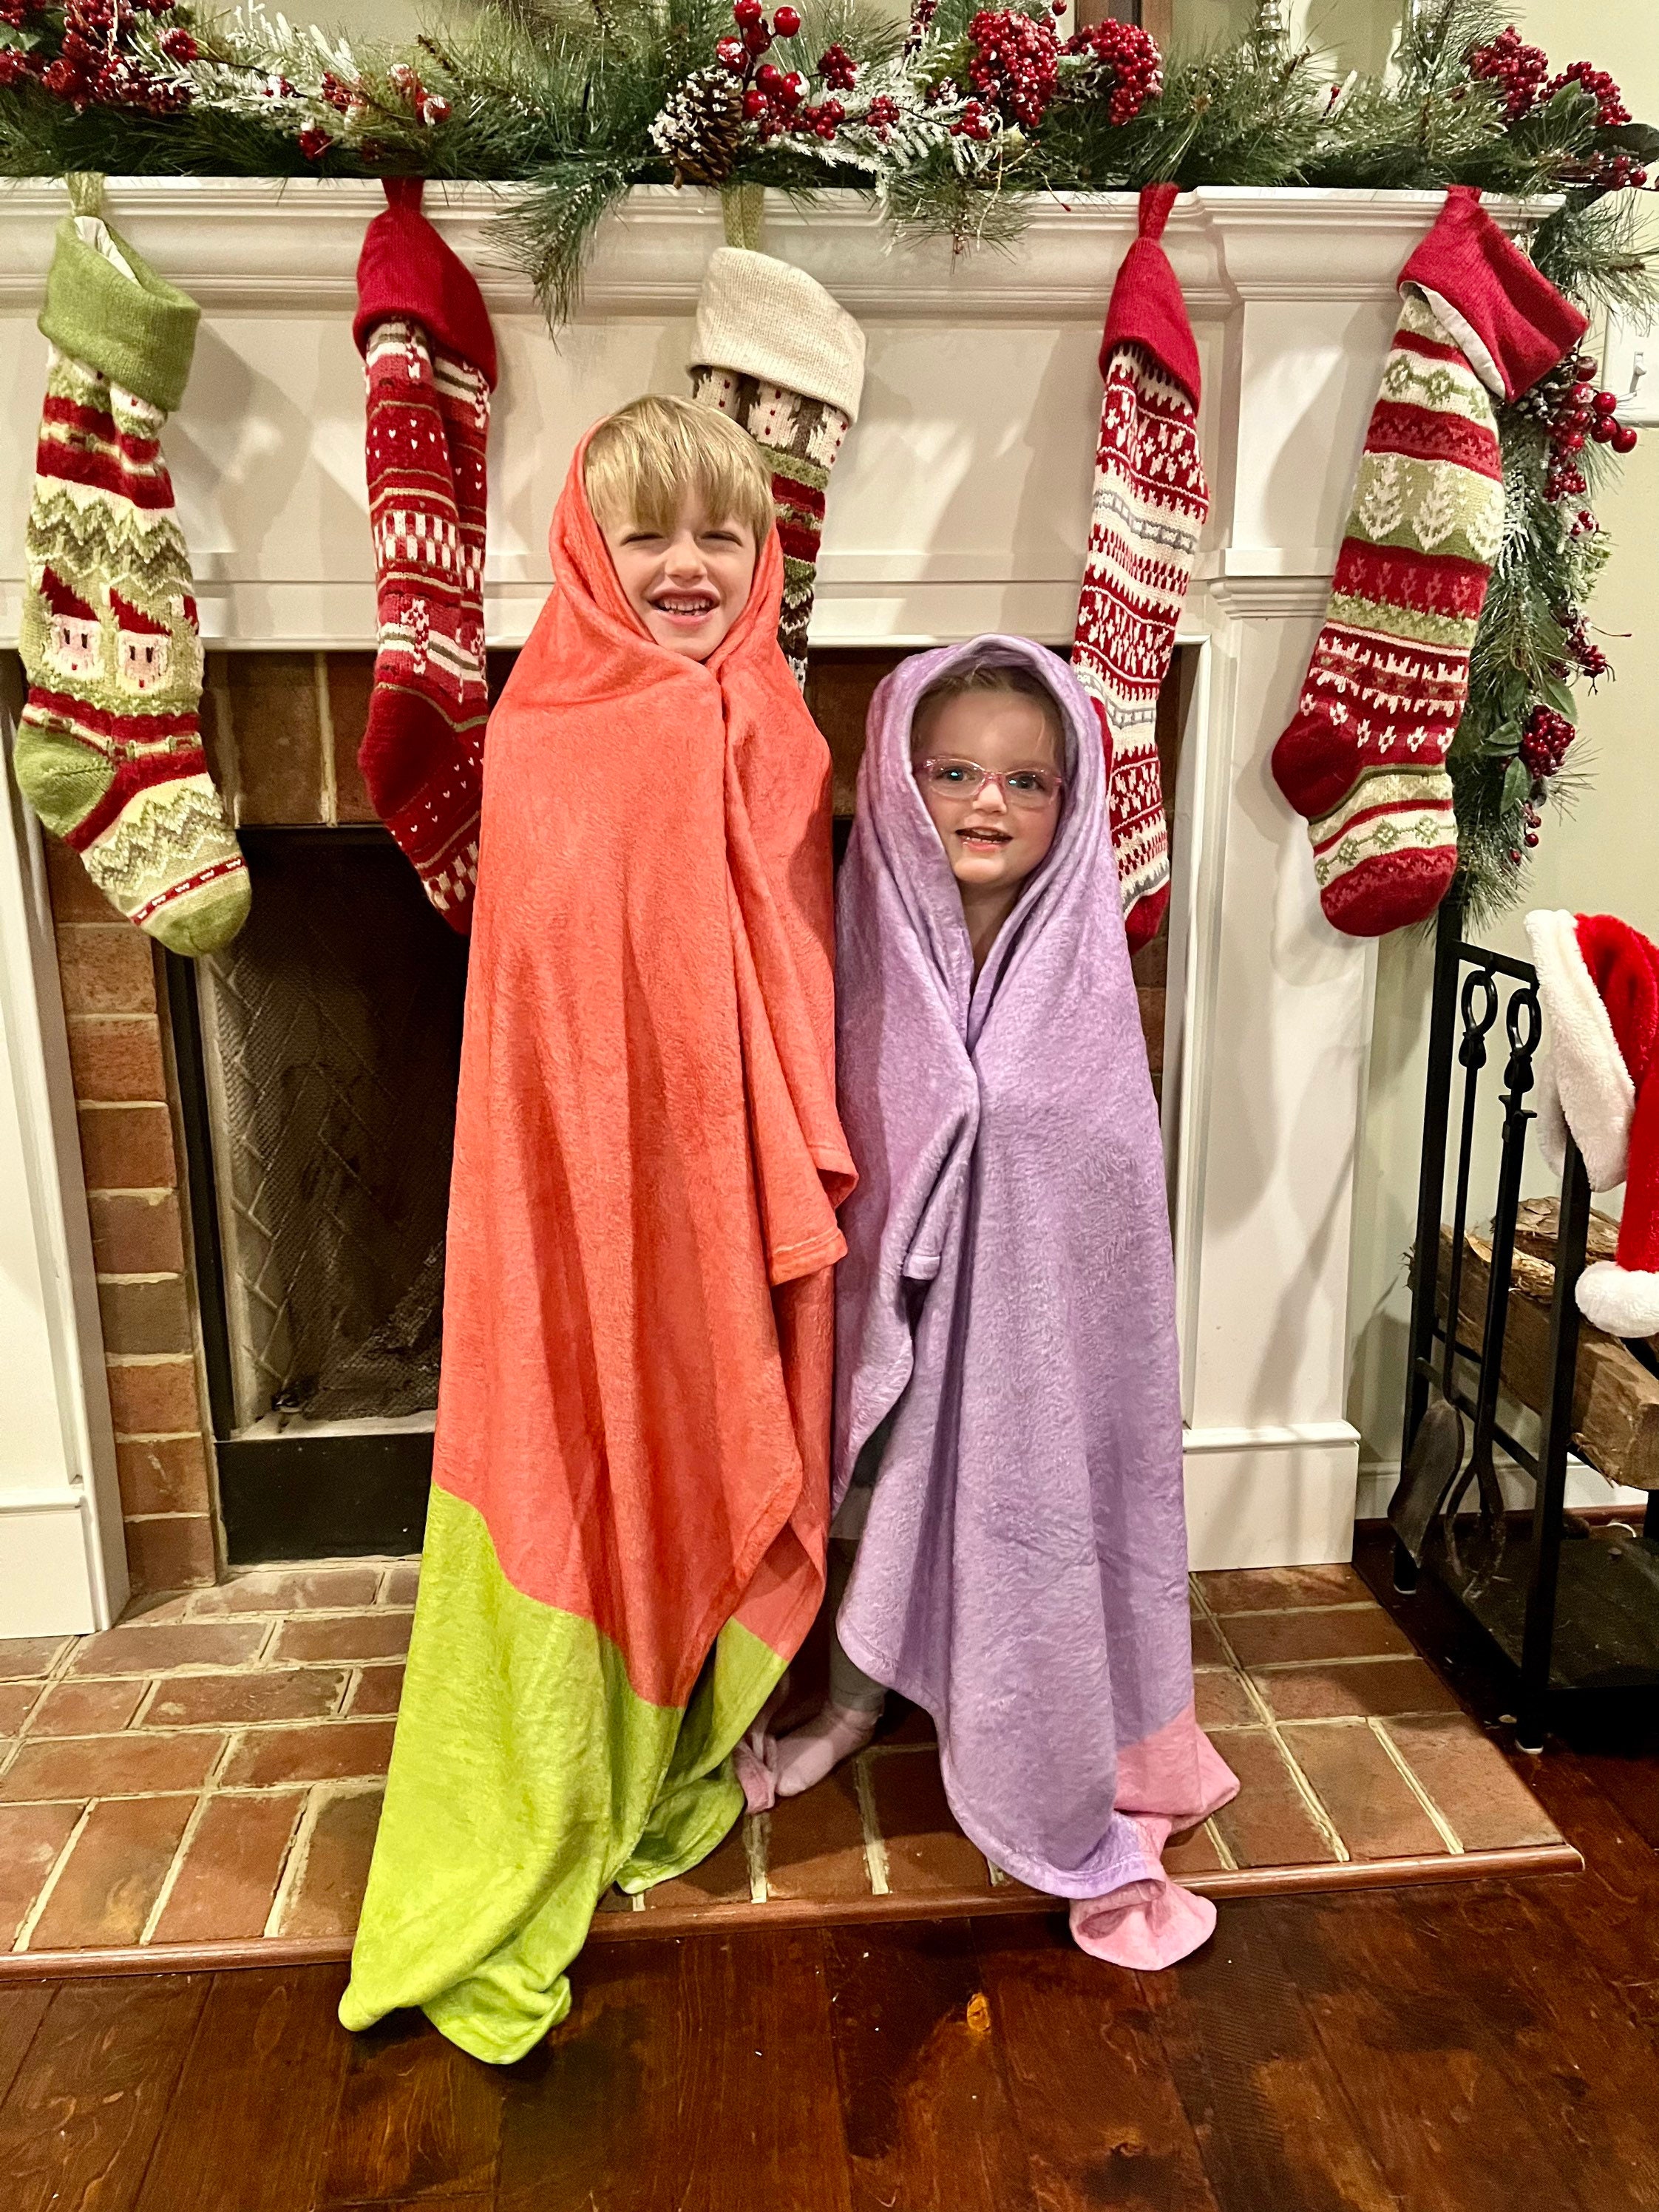 Kids Burglar Granny Costume